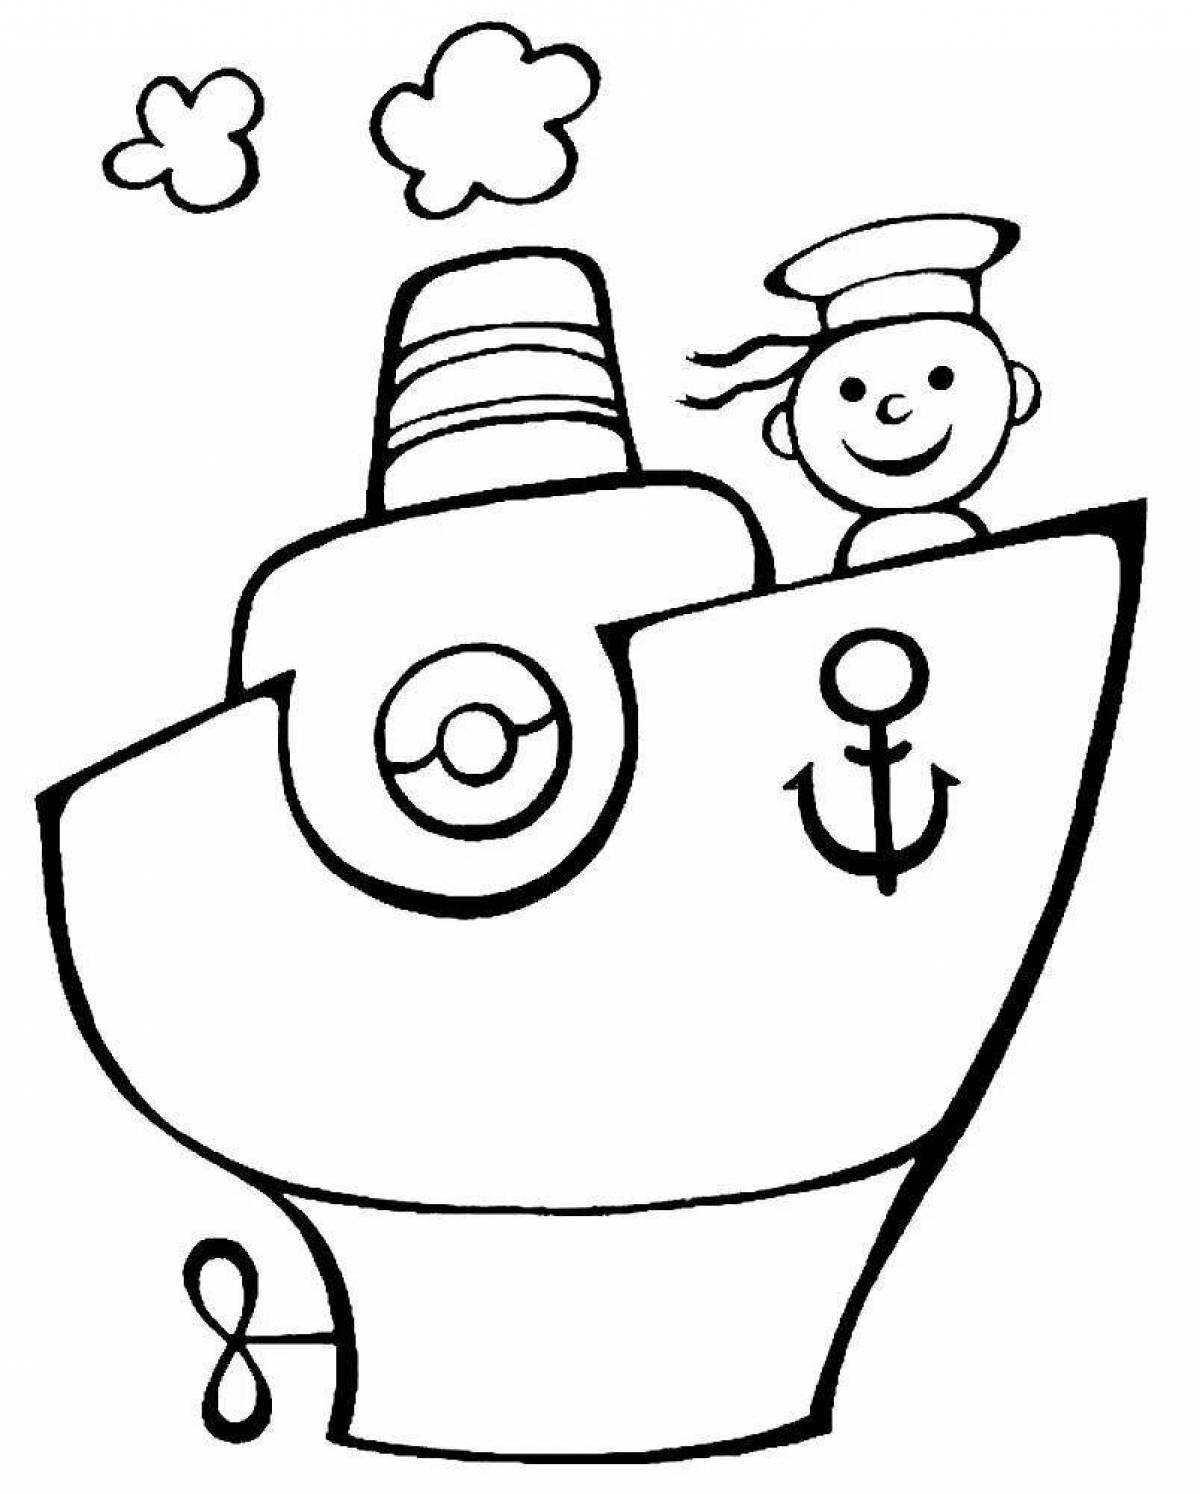 Игривая страница раскраски лодки для детей 4-5 лет